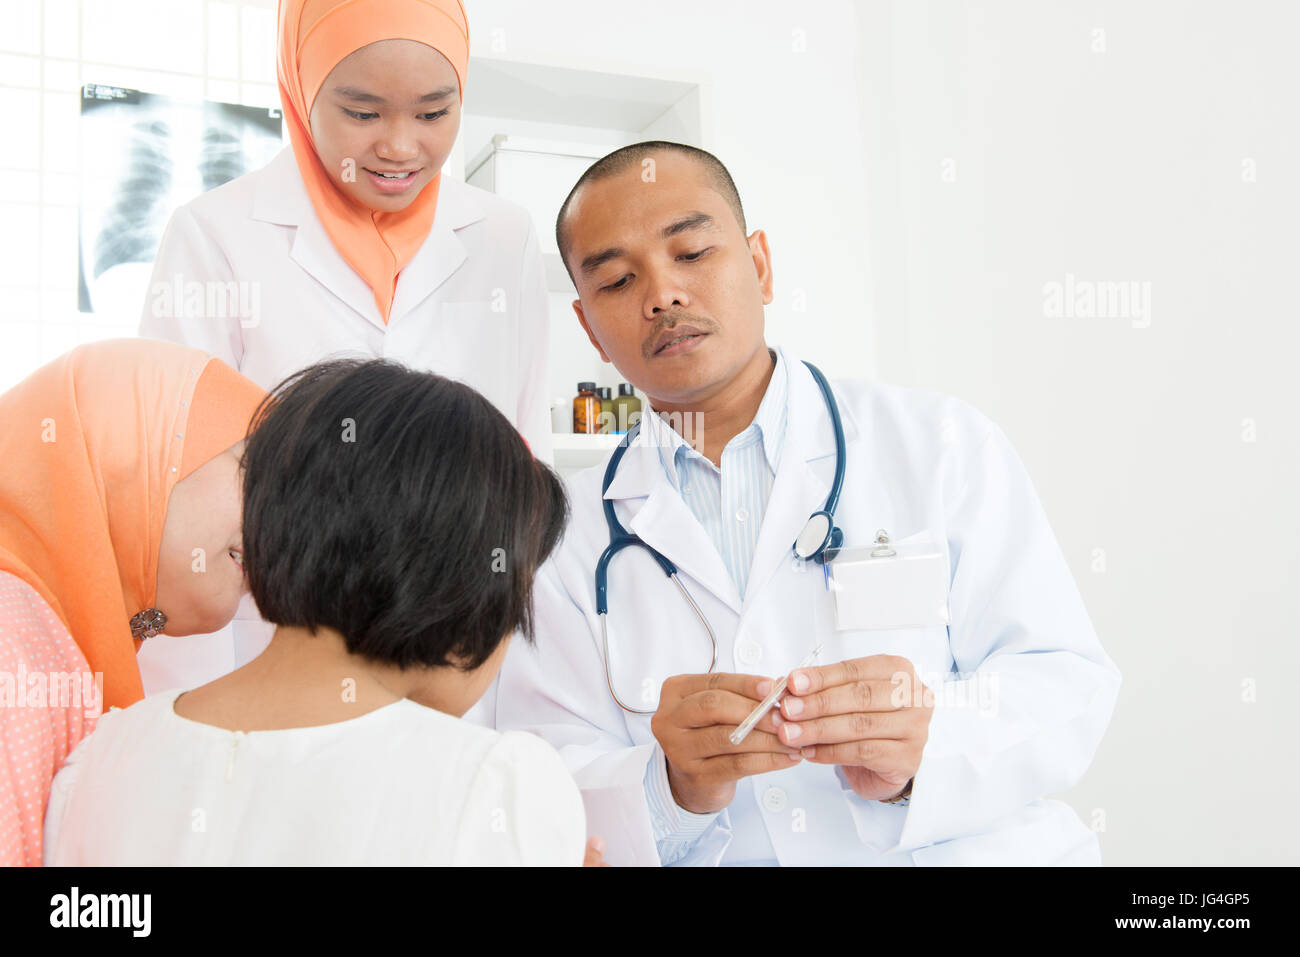 Überprüfung des kleinen Mädchens Temperatur am Krankenhaus Arzt.  Südostasiatische muslimischen Familie. Stockfoto